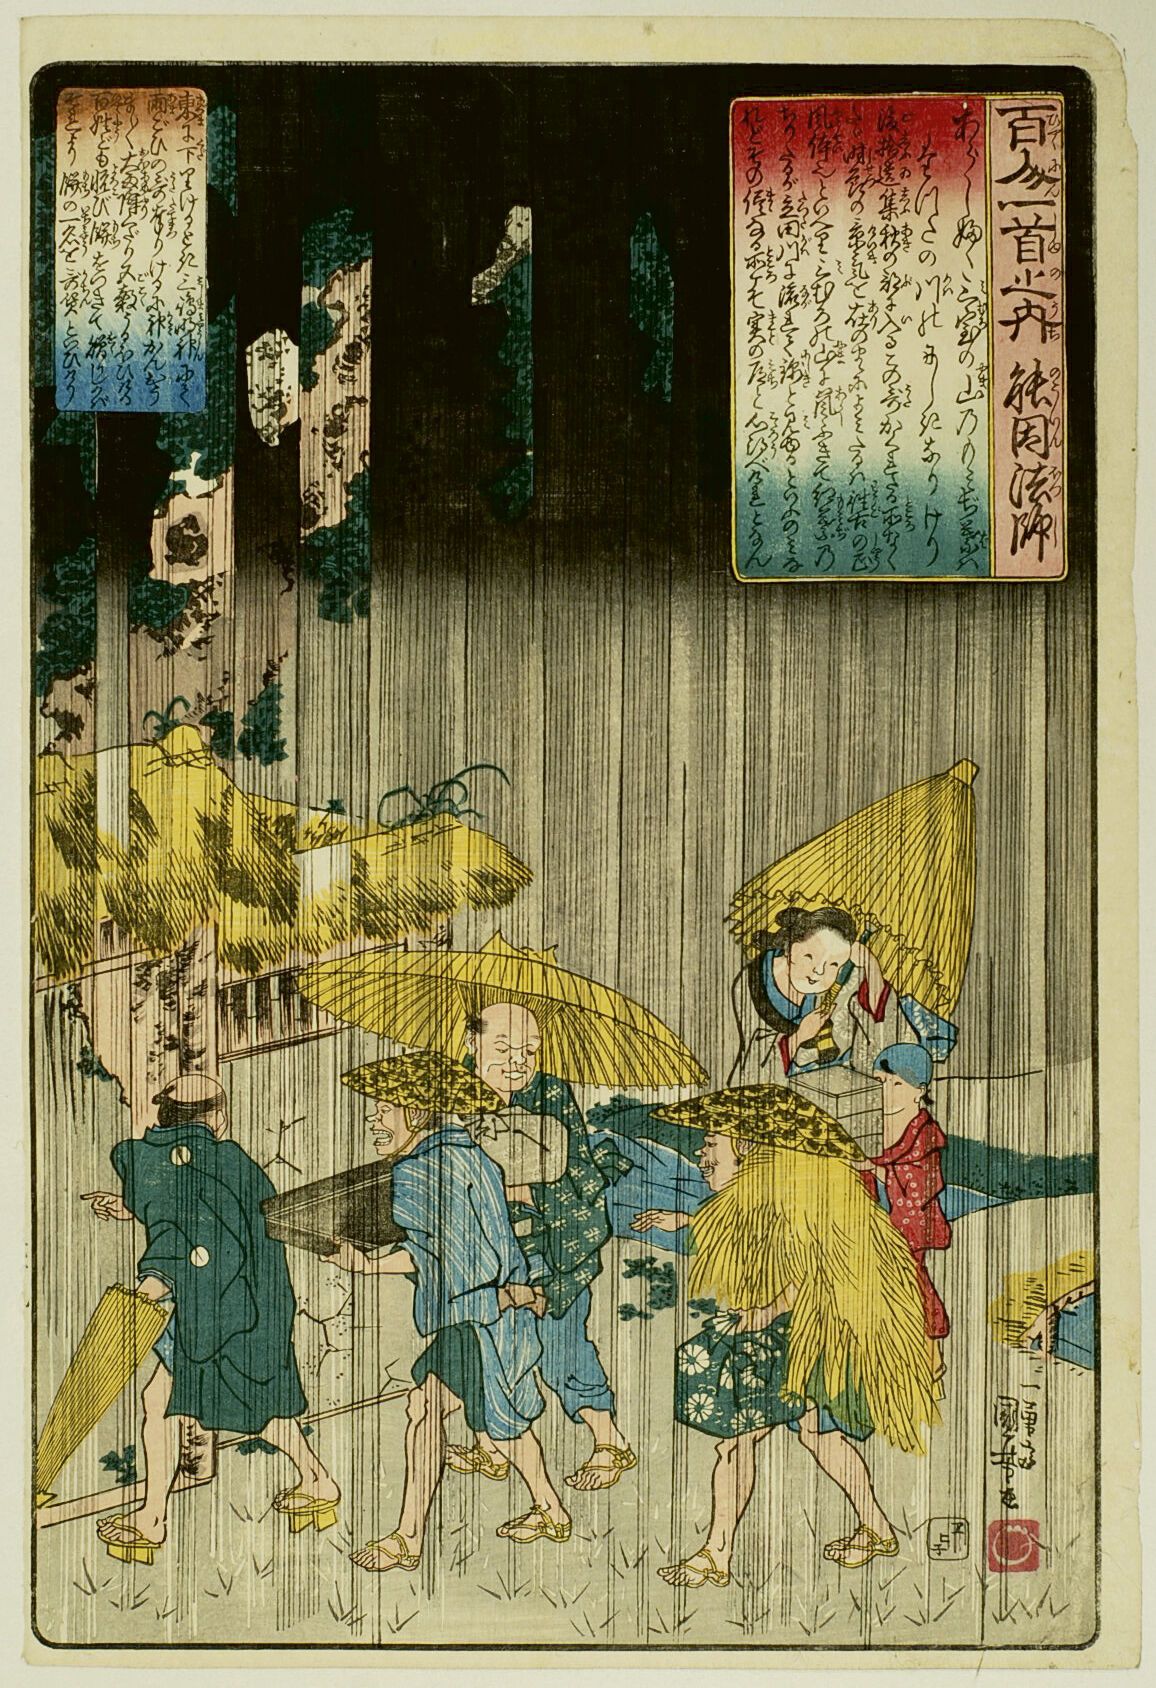 Null 宇都宫邦彦 (1797-1861)
百人一首》系列中的 "Oban tate-e"，板块为 "Nôin-hôshi"，一群被雨水惊吓的旅行者。 
签名&hellip;